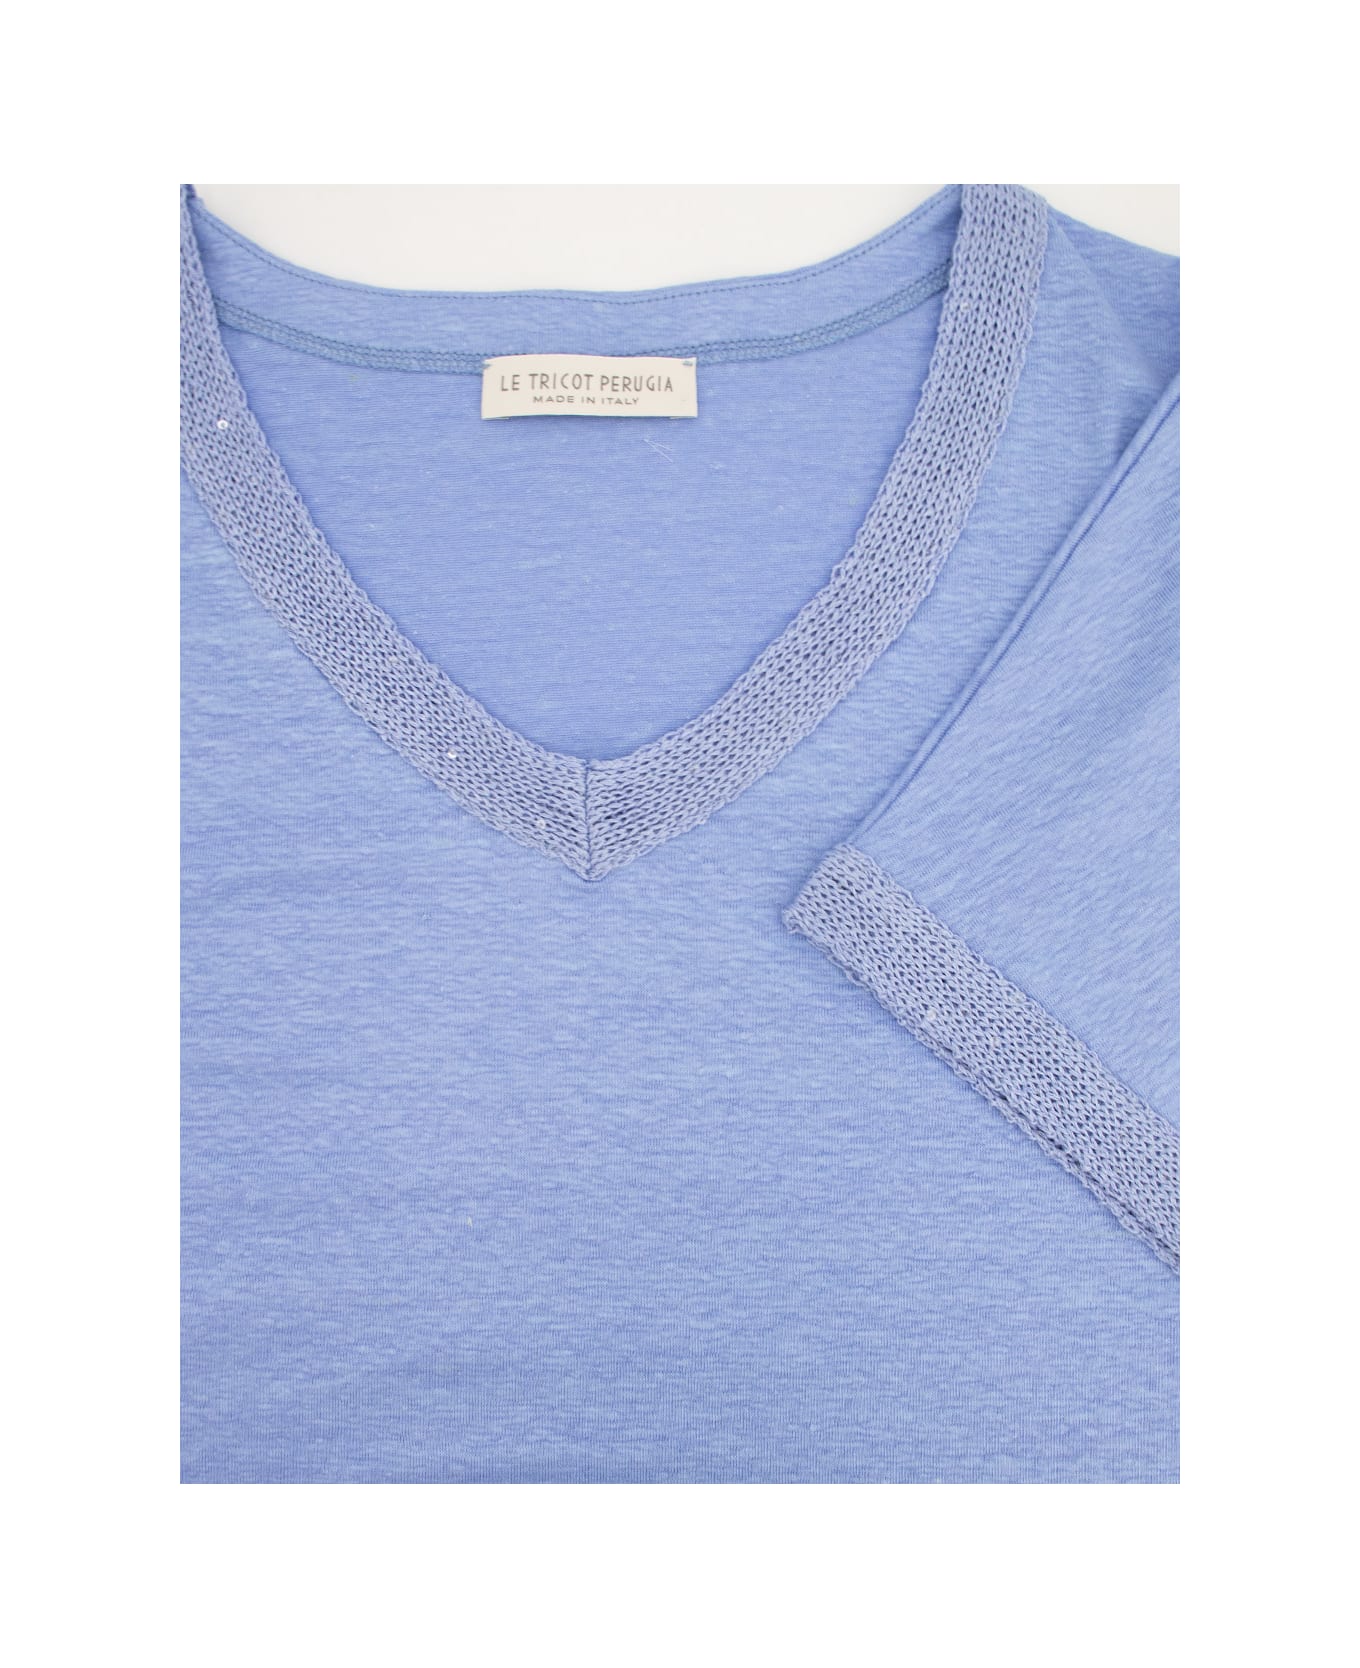 Le Tricot Perugia T-shirt - BLUE Tシャツ